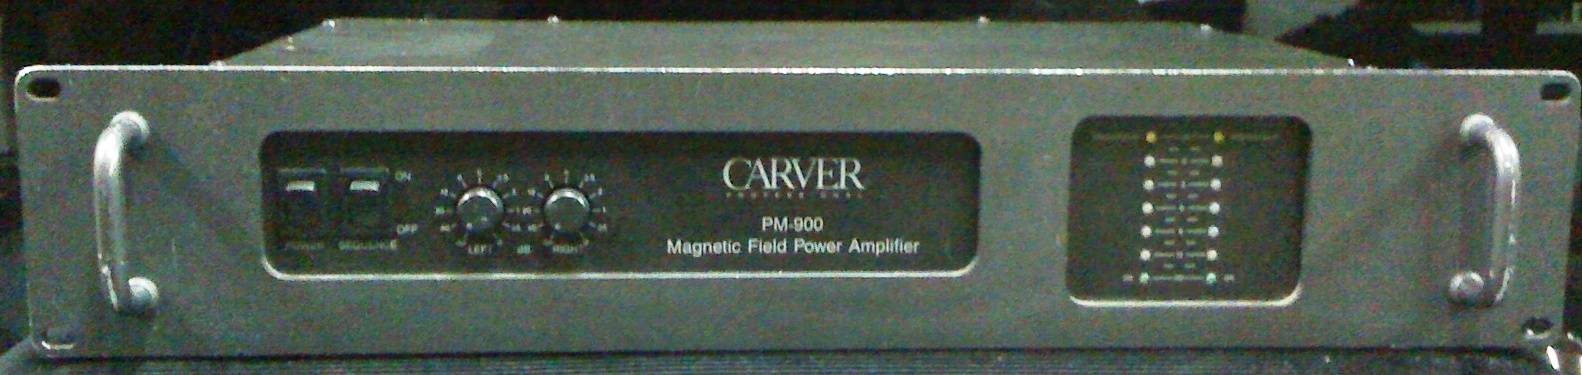 Carver PM-900